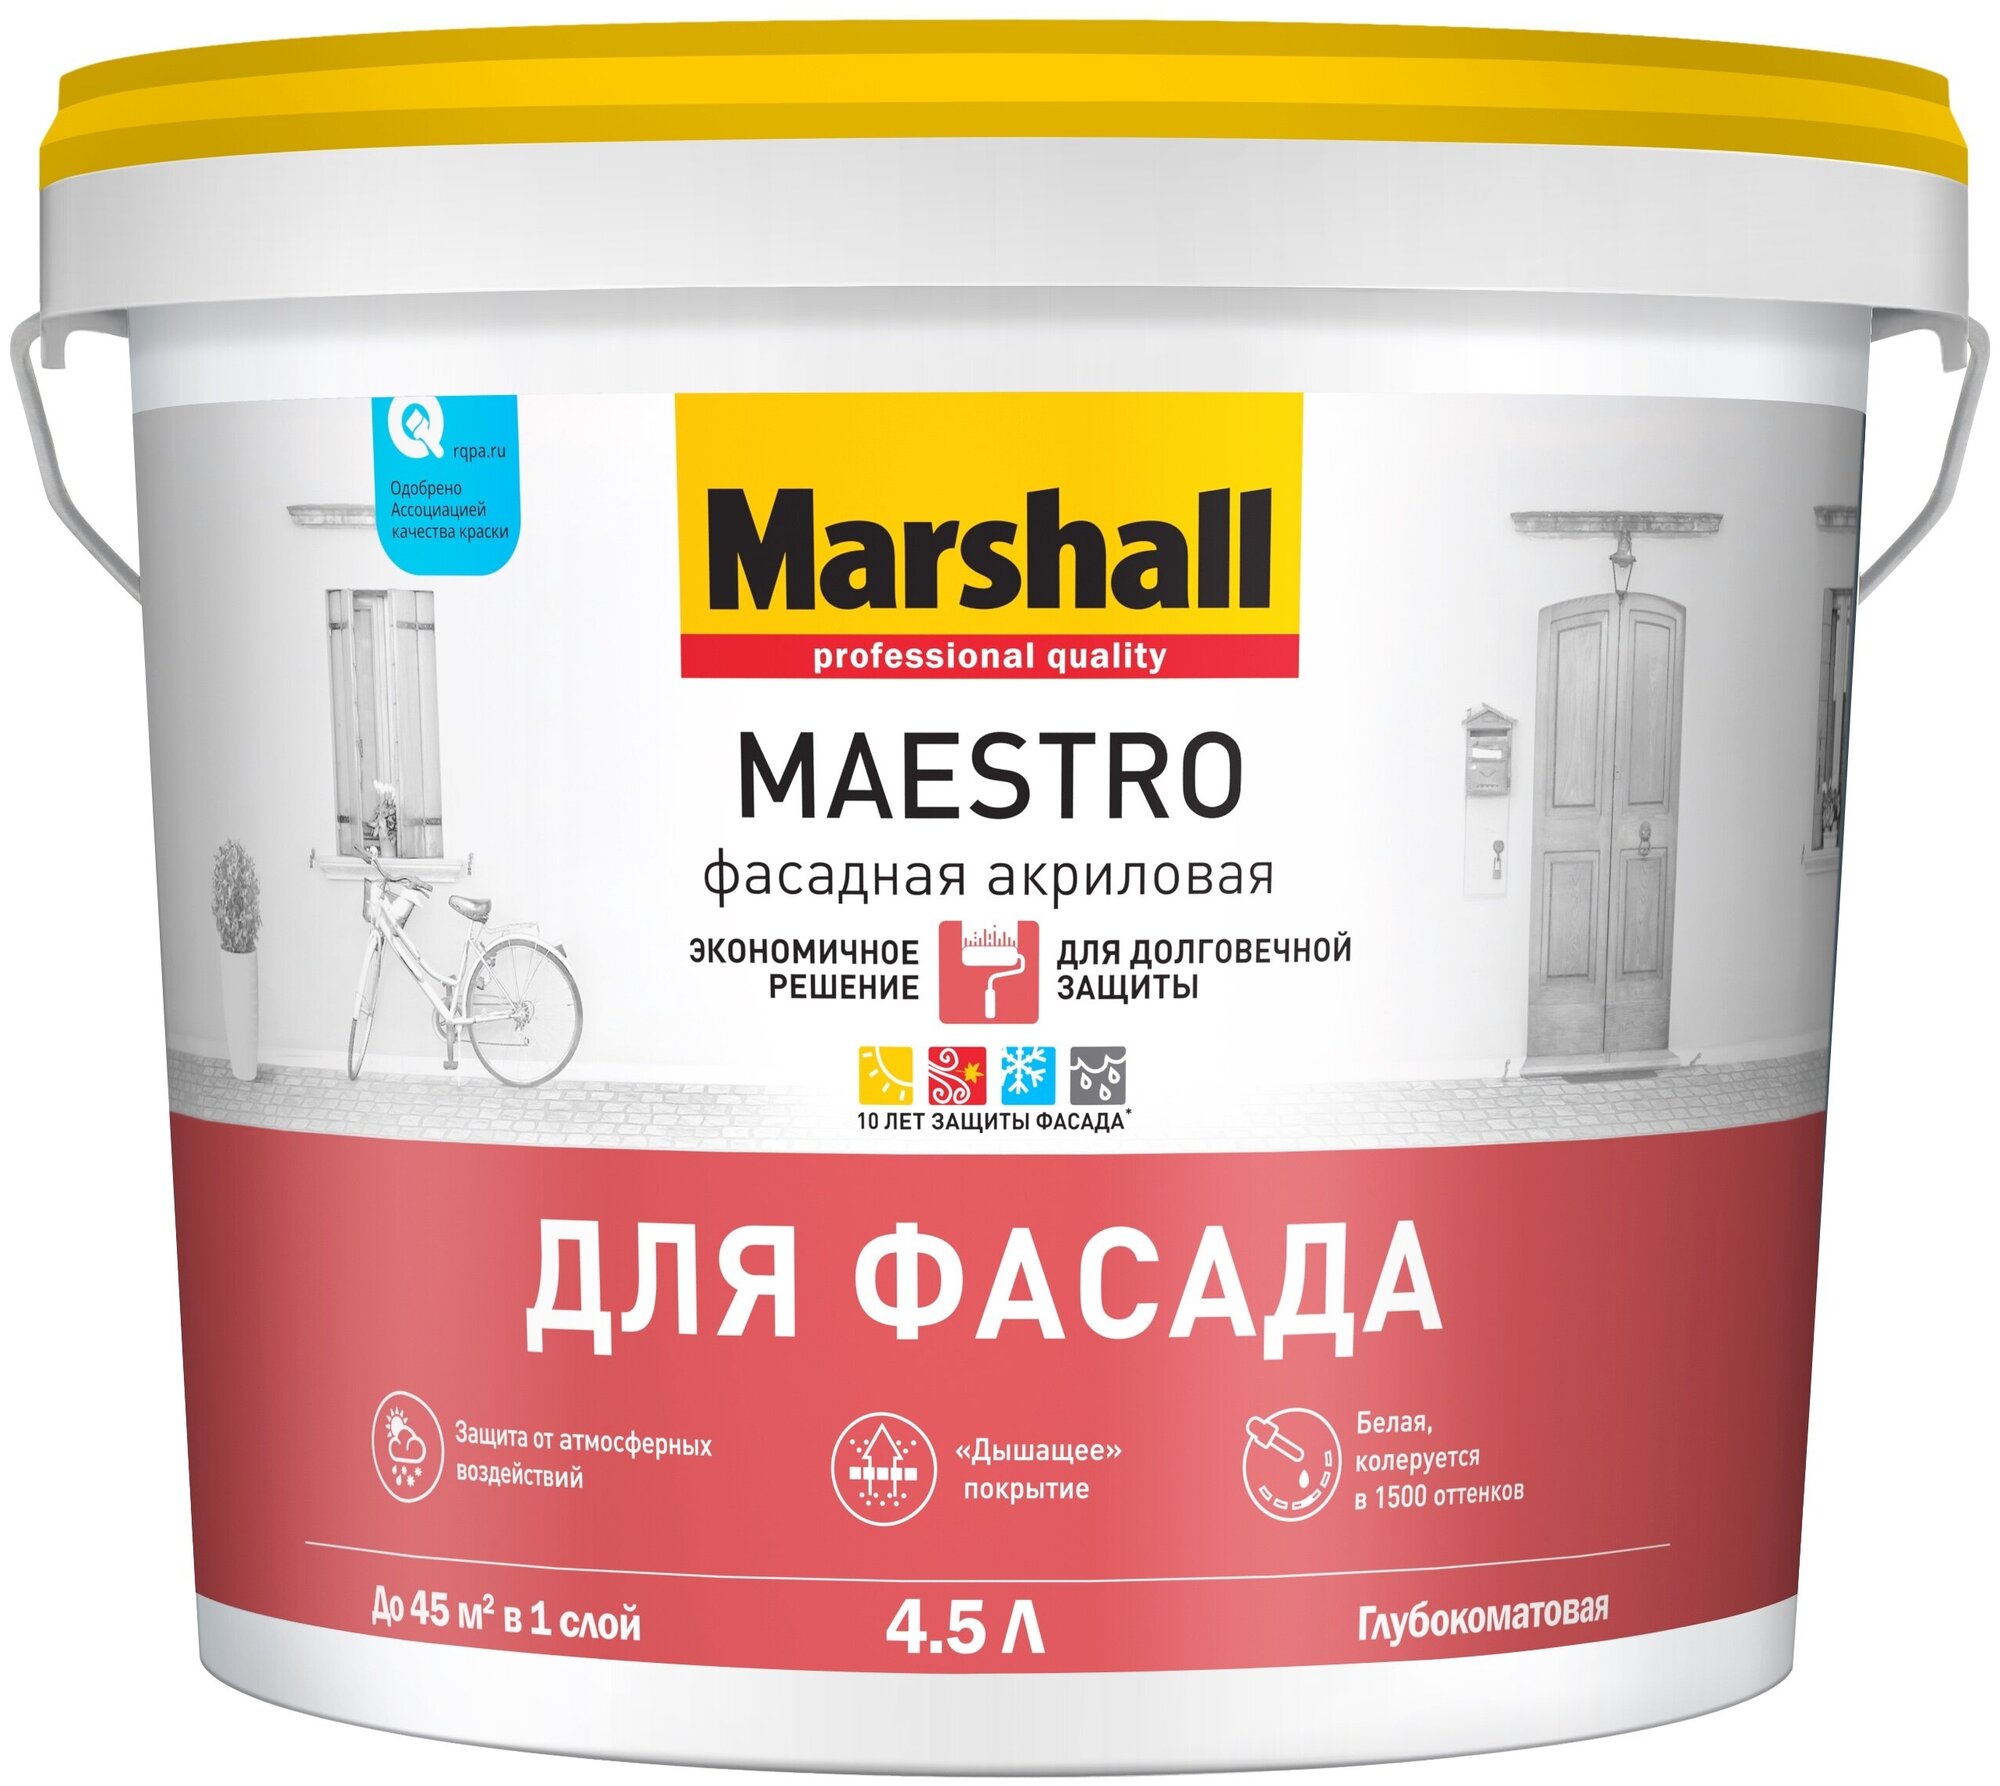 Краска акриловая Marshall Maestro для фасада влагостойкая глубокоматовая